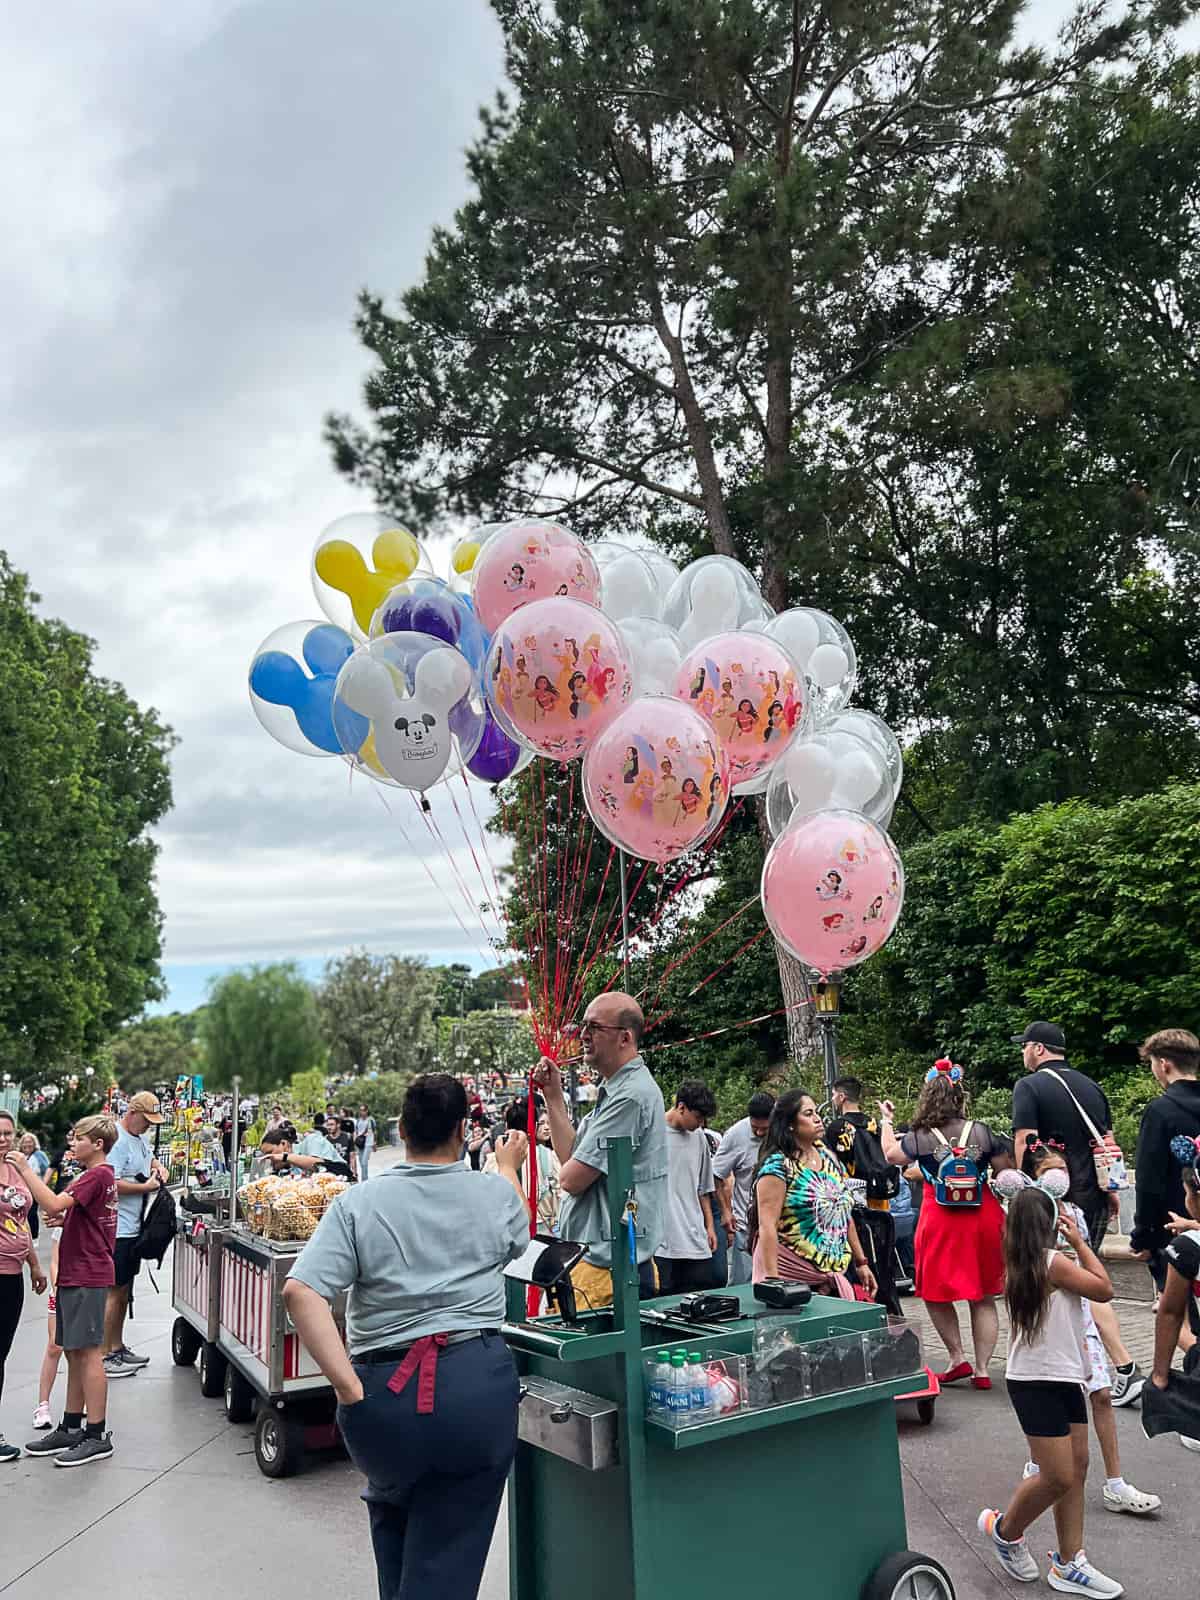 Disney character balloons at Disneyland Park